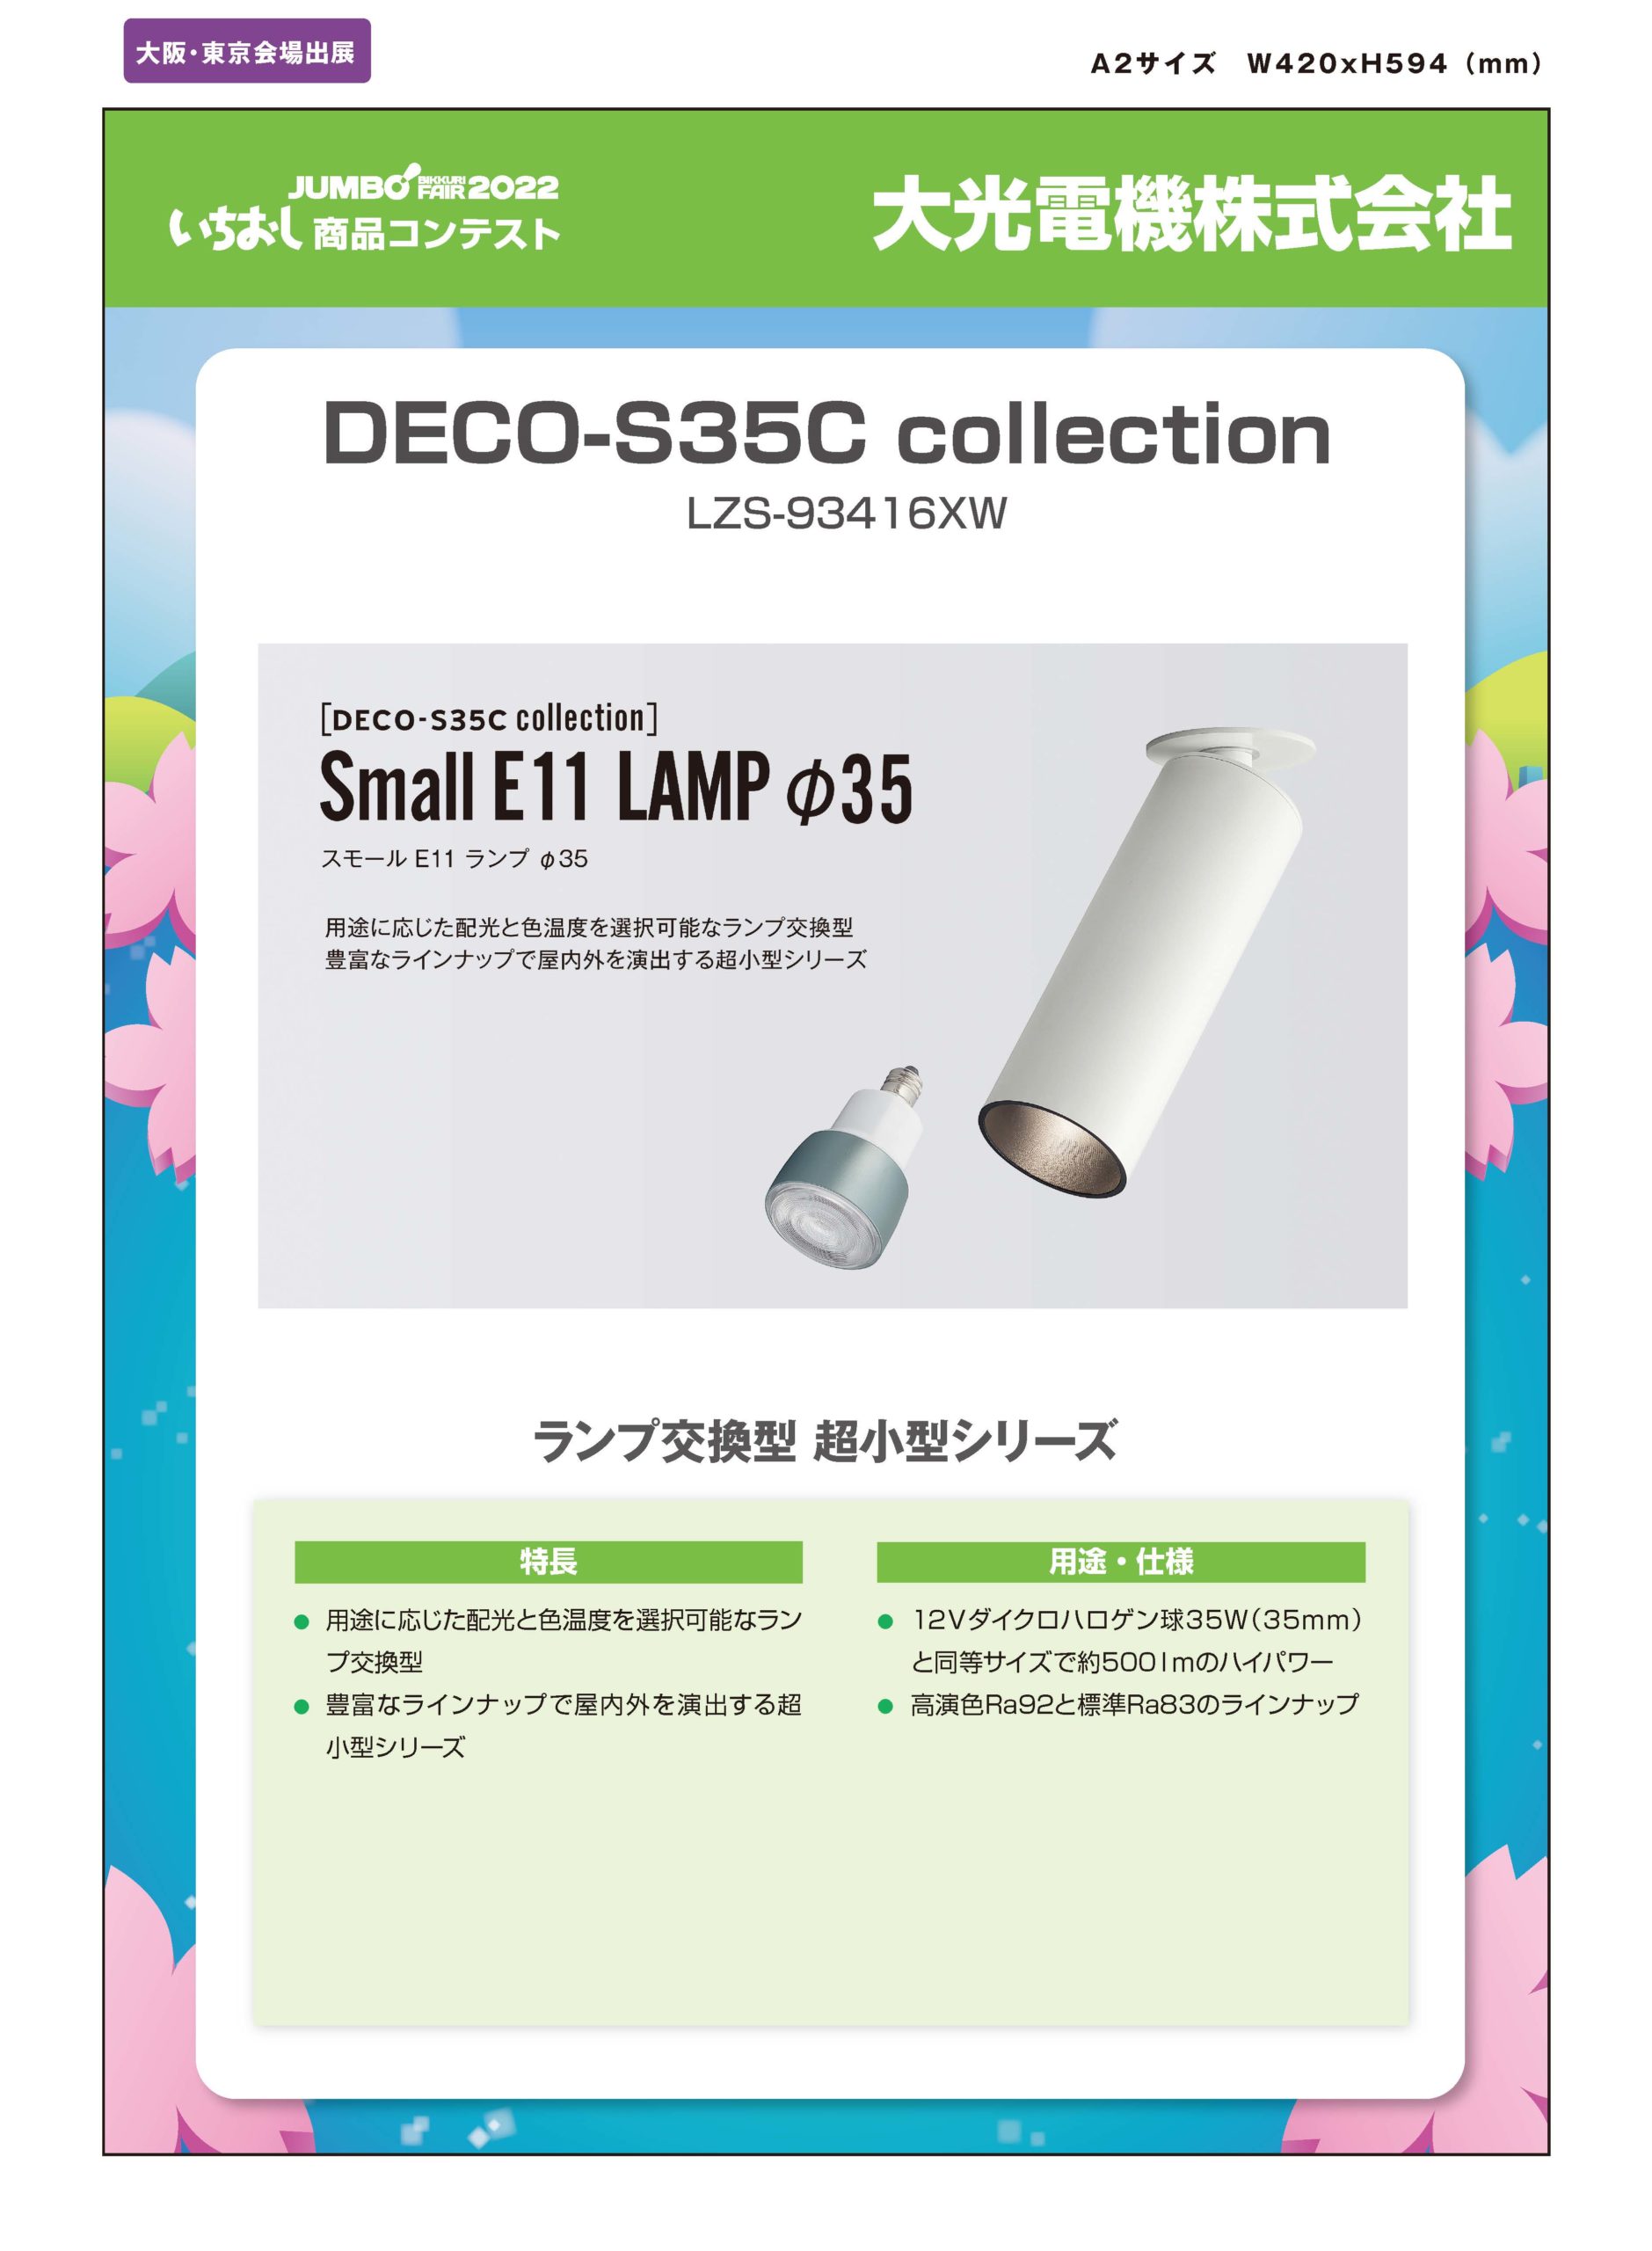 「DECO-S35C collection」大光電機株式会社の画像